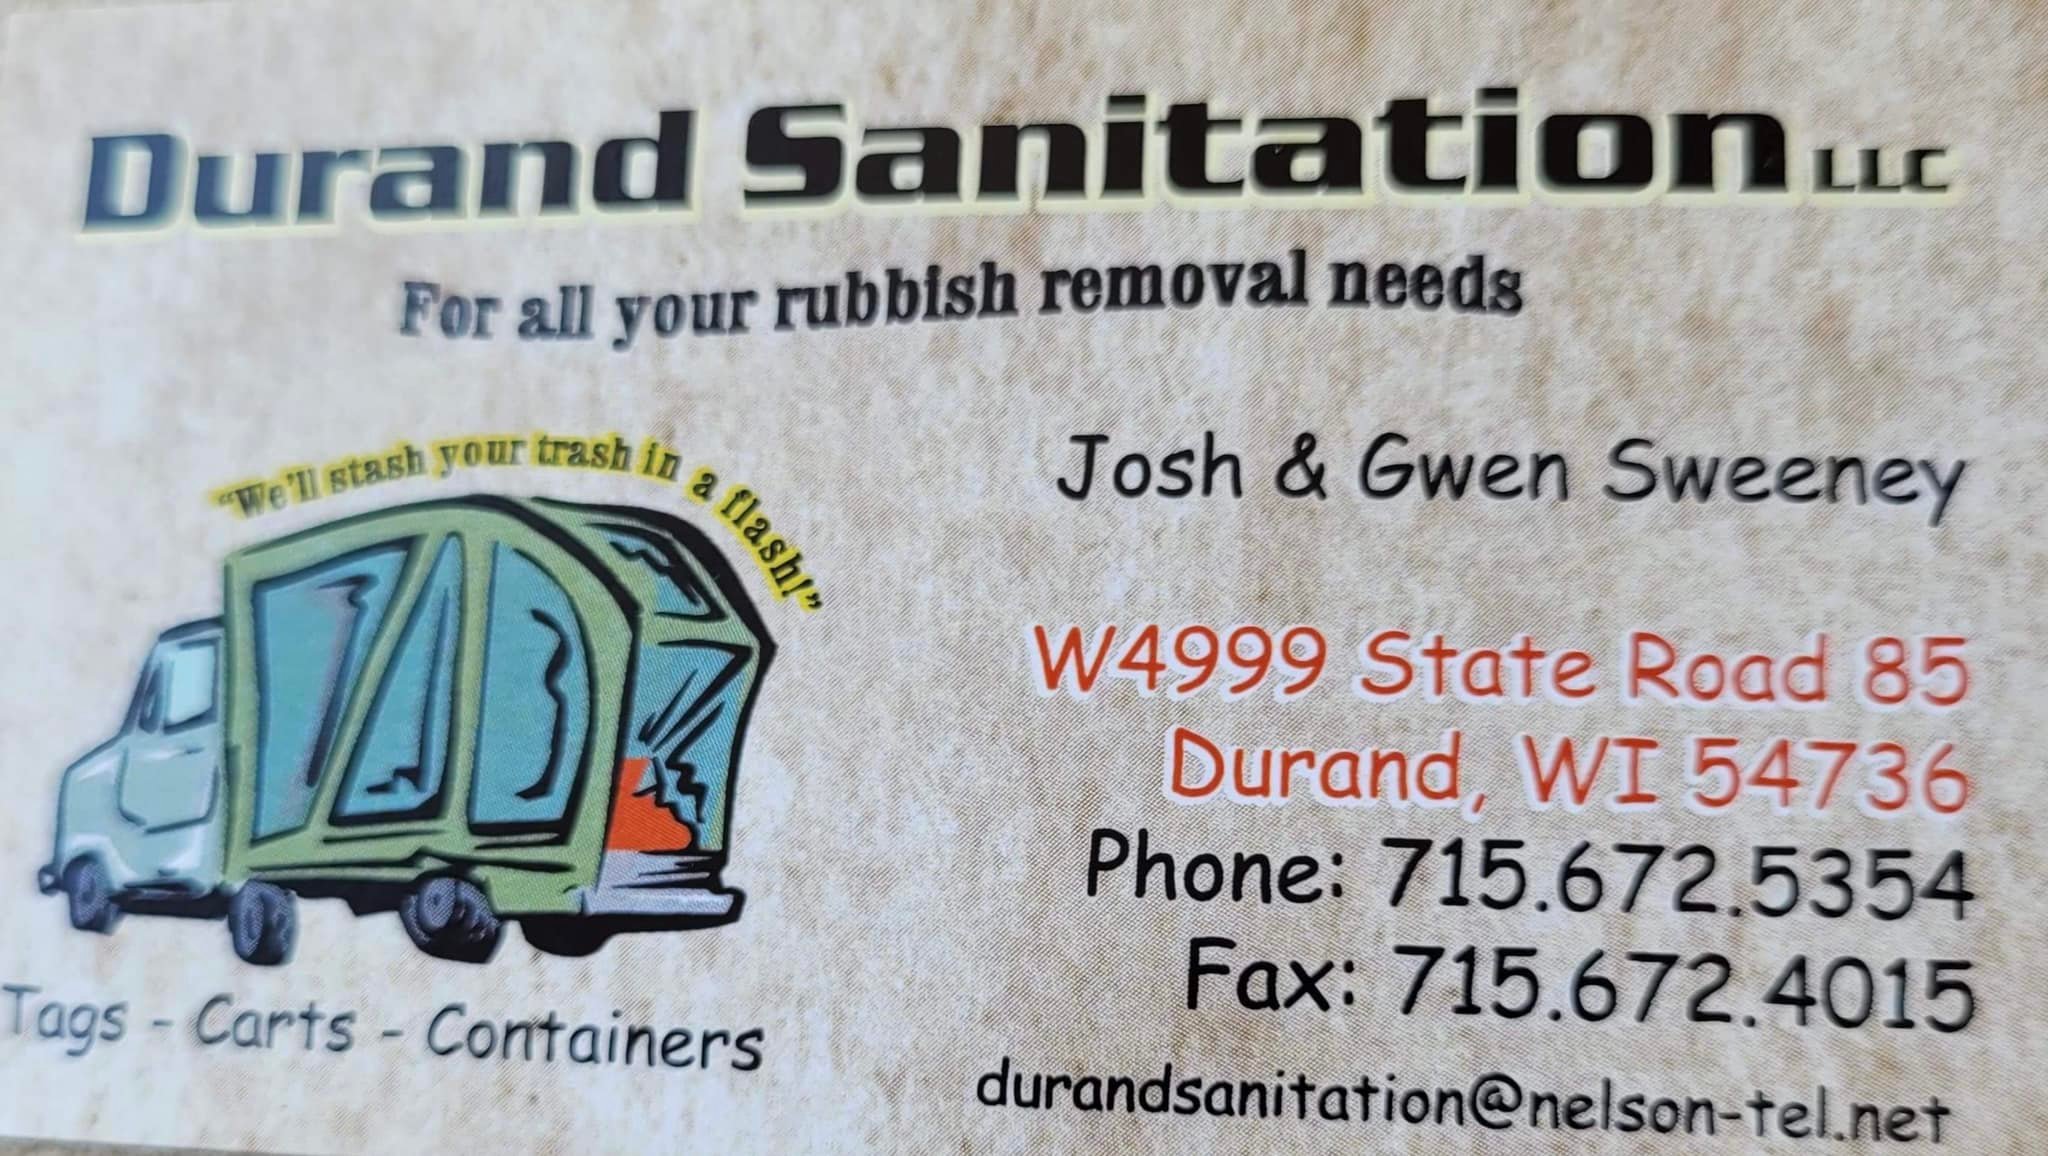 Durand Sanitation